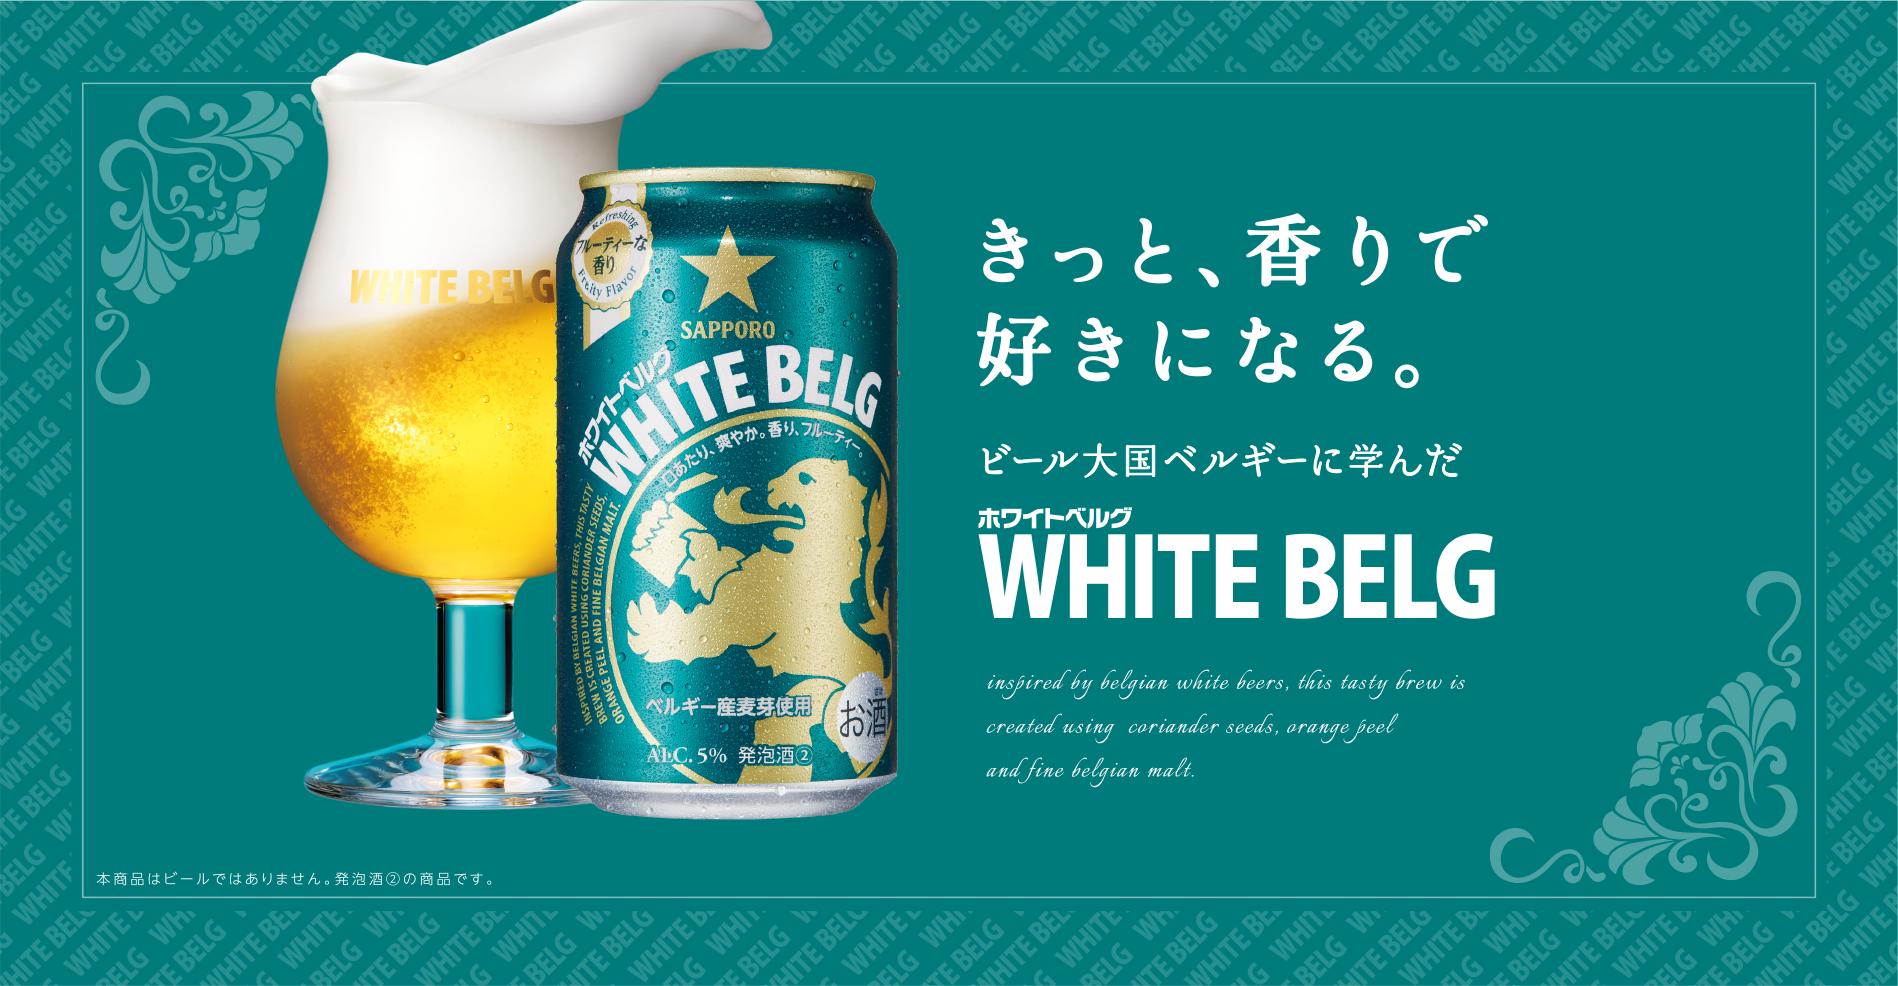 きっと香りで好きになる ビール大国ベルギーに学んだホワイトベルグ 日本初、7年連続3ツ星獲得 ダイヤモンド味覚賞受賞 ※本商品はビールではありません。リキュール（発泡性）①の商品です。